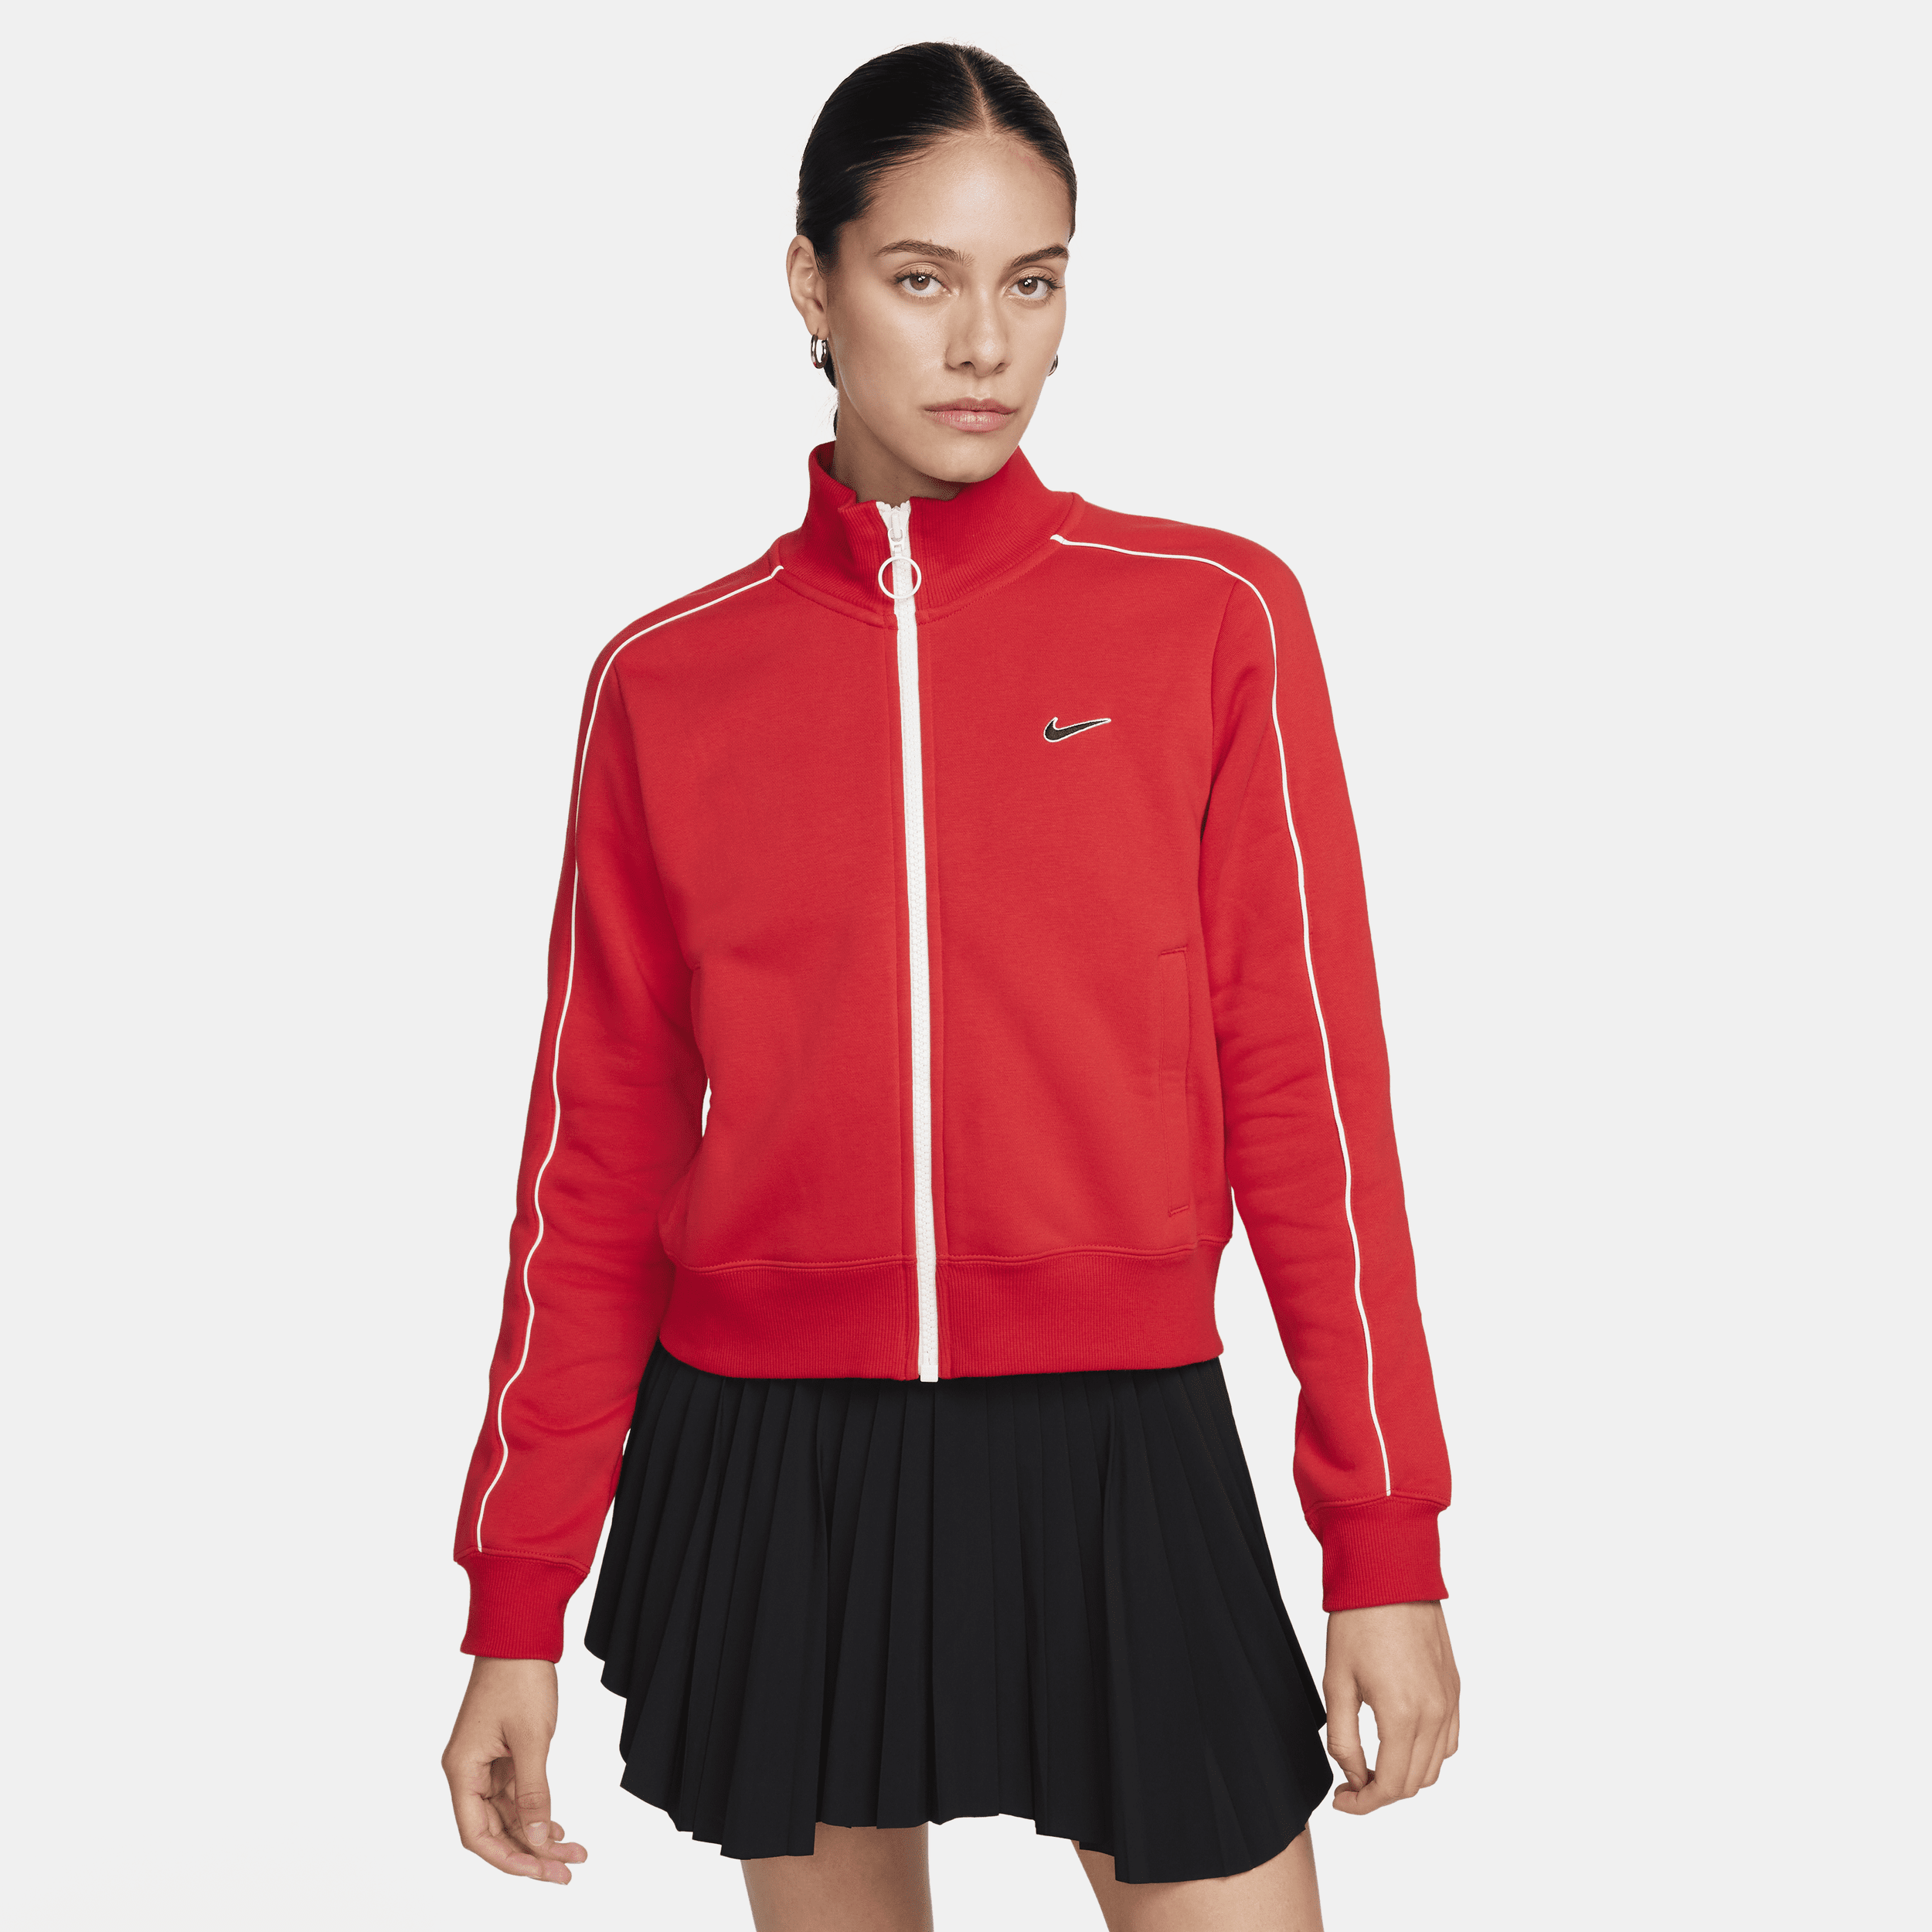 Nike Sportswear-træningstop i fleece til kvinder - rød